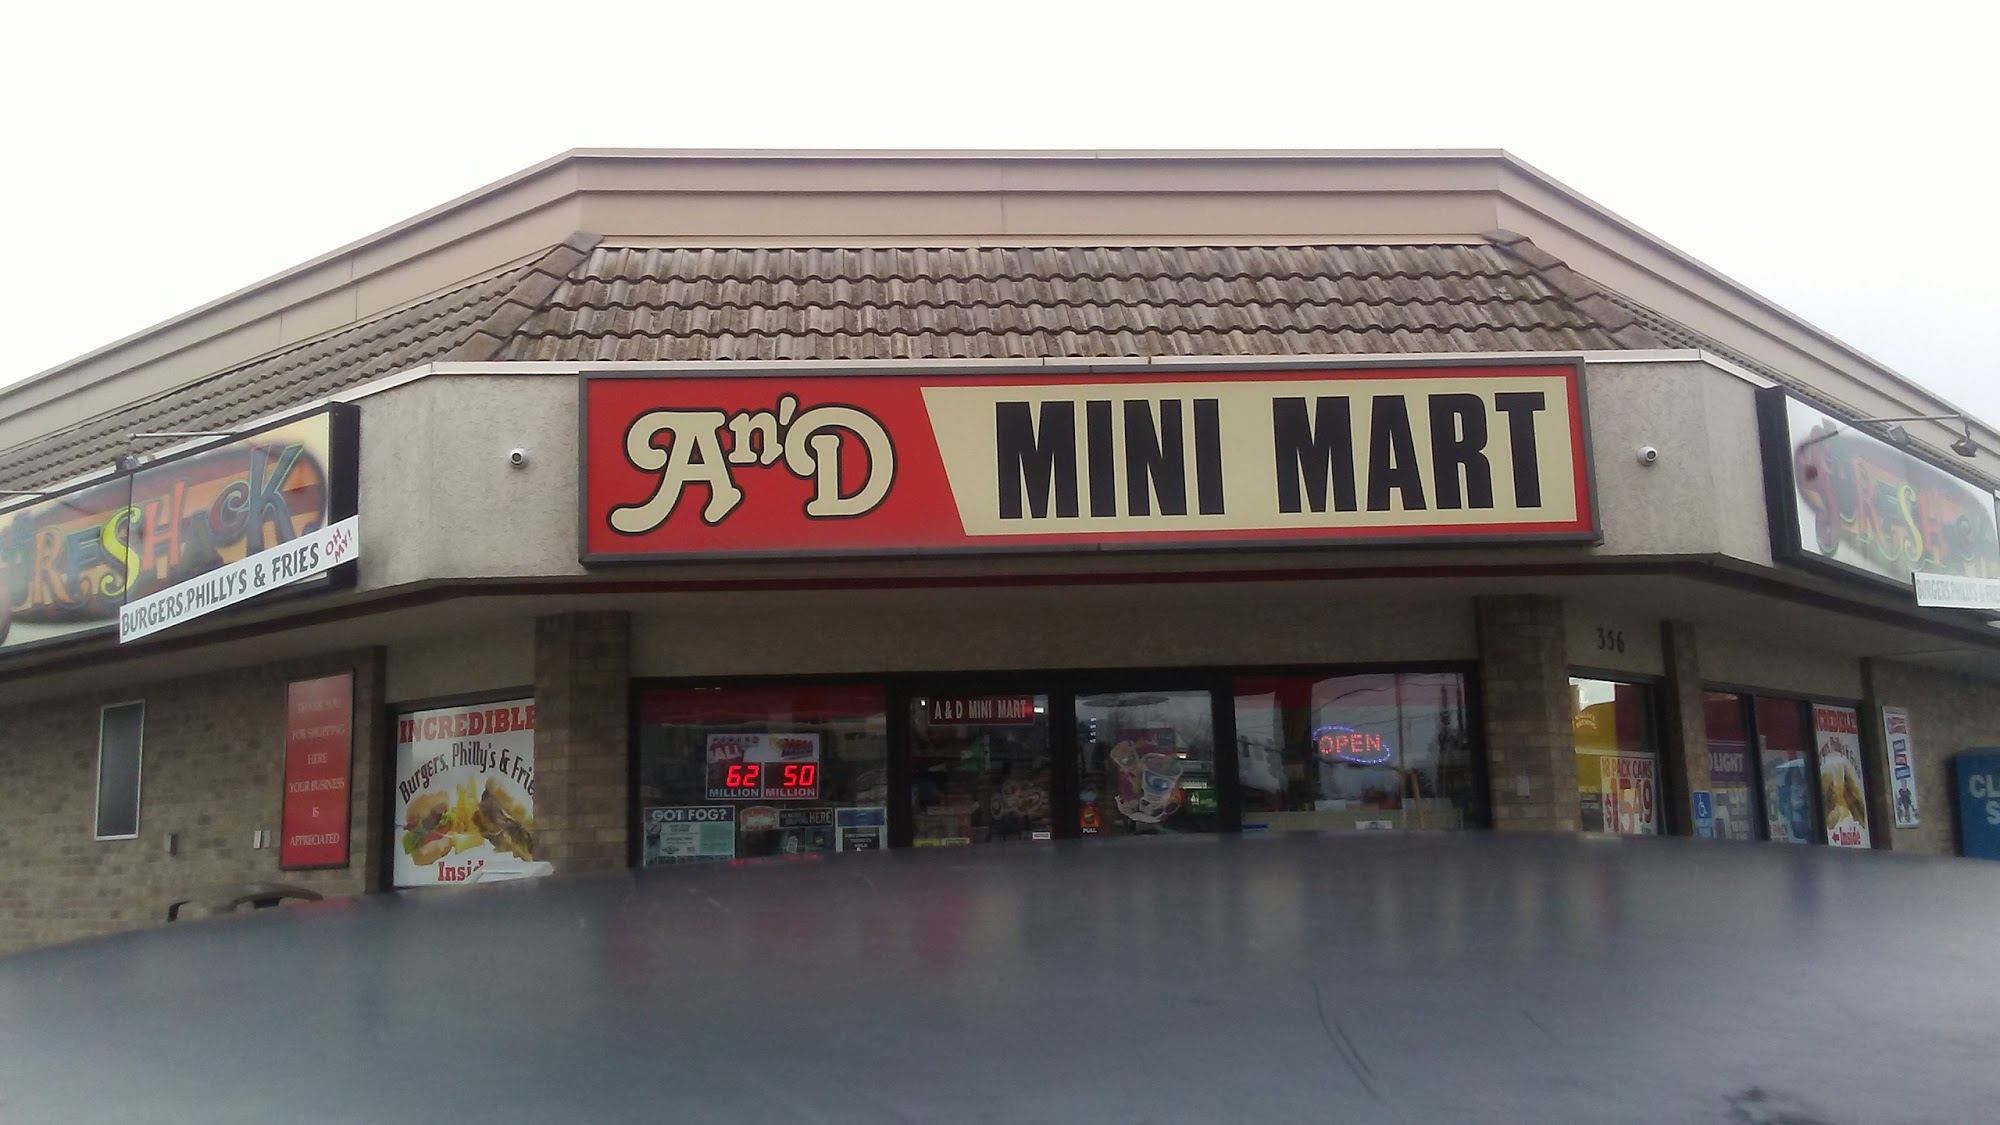 A & D Mini Mart